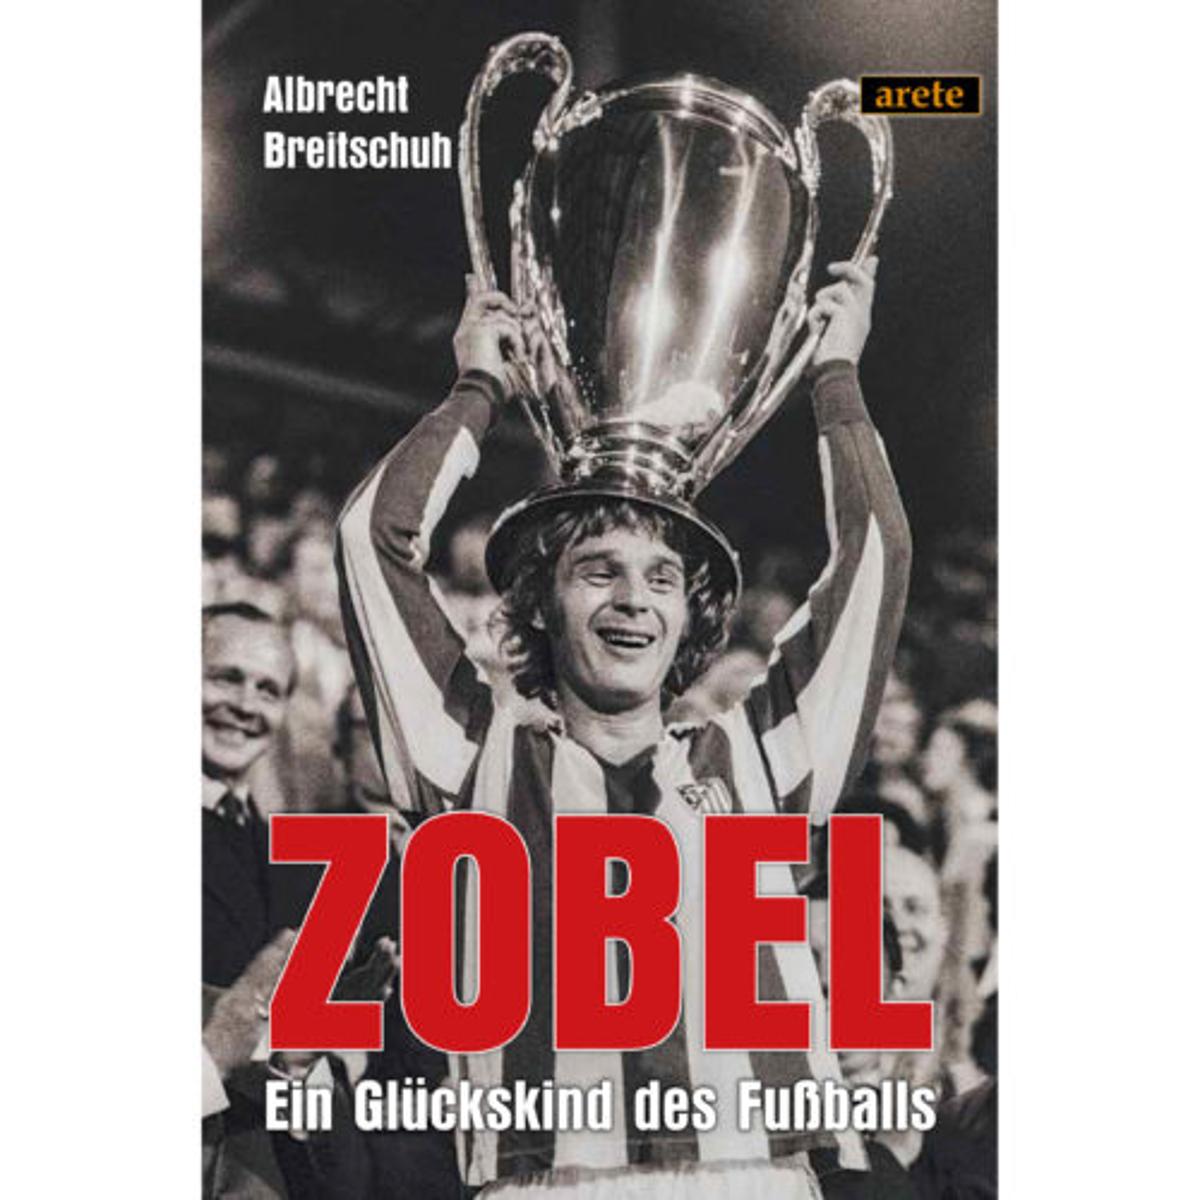 Autor Albrecht Breitschuh und seinem Hauptdarsteller Rainer Zobel ist ein wunderbares Buch mit faszinierenden, verblüffenden und höchst unterhaltsamen Einblicken in den Fußball gelungen: Zobel - Ein Glückskind des Fußballs